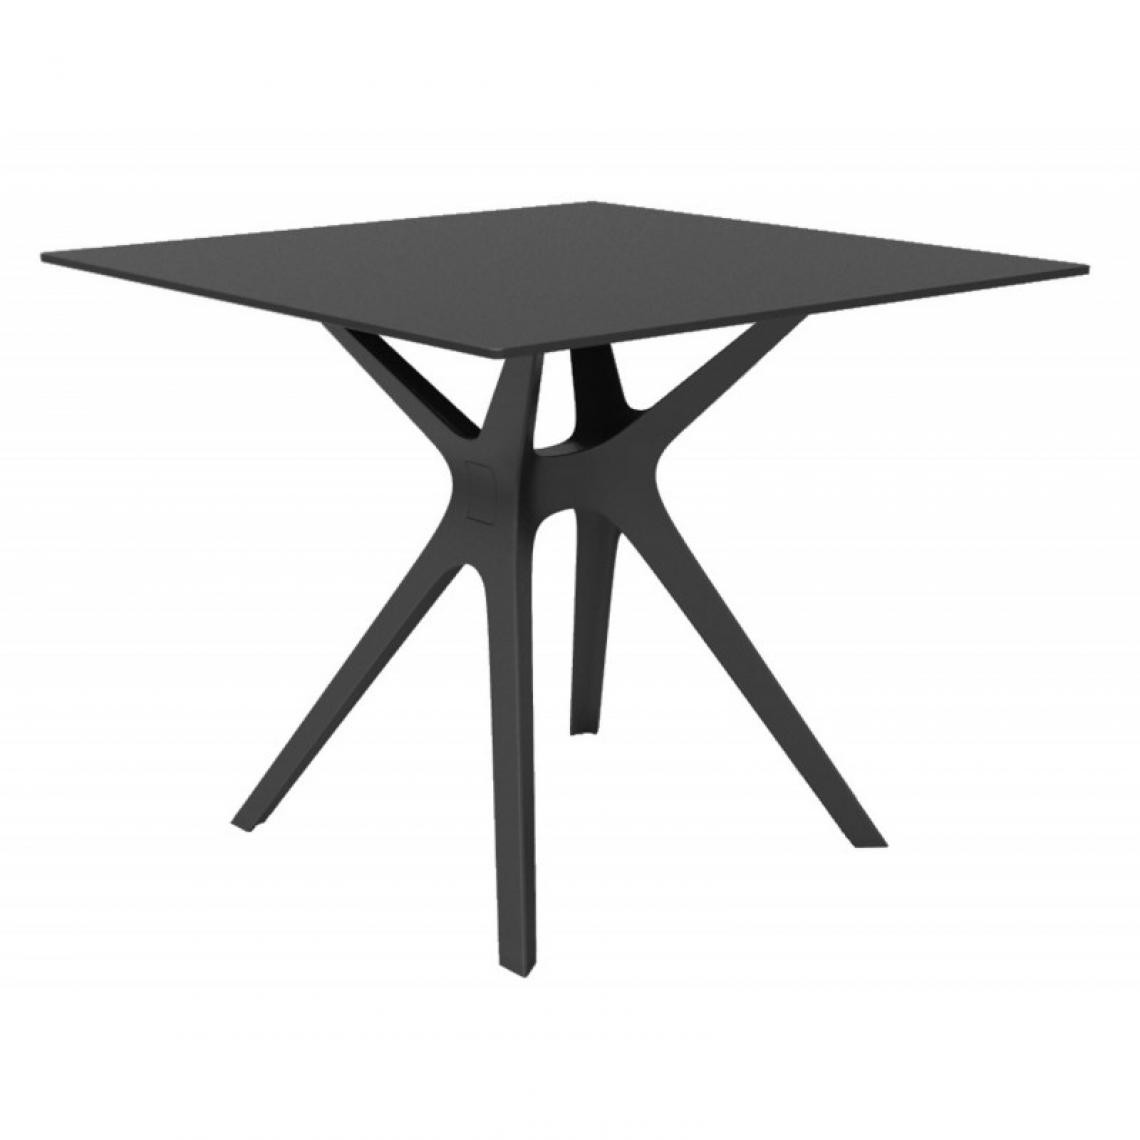 Resol - Table Phenolique 90x90 Pied De Table Vela "s" - Resol - Pied Noir - Tableau NoirAluminium, phénolique compact, fibre de verre, pol - Tables à manger